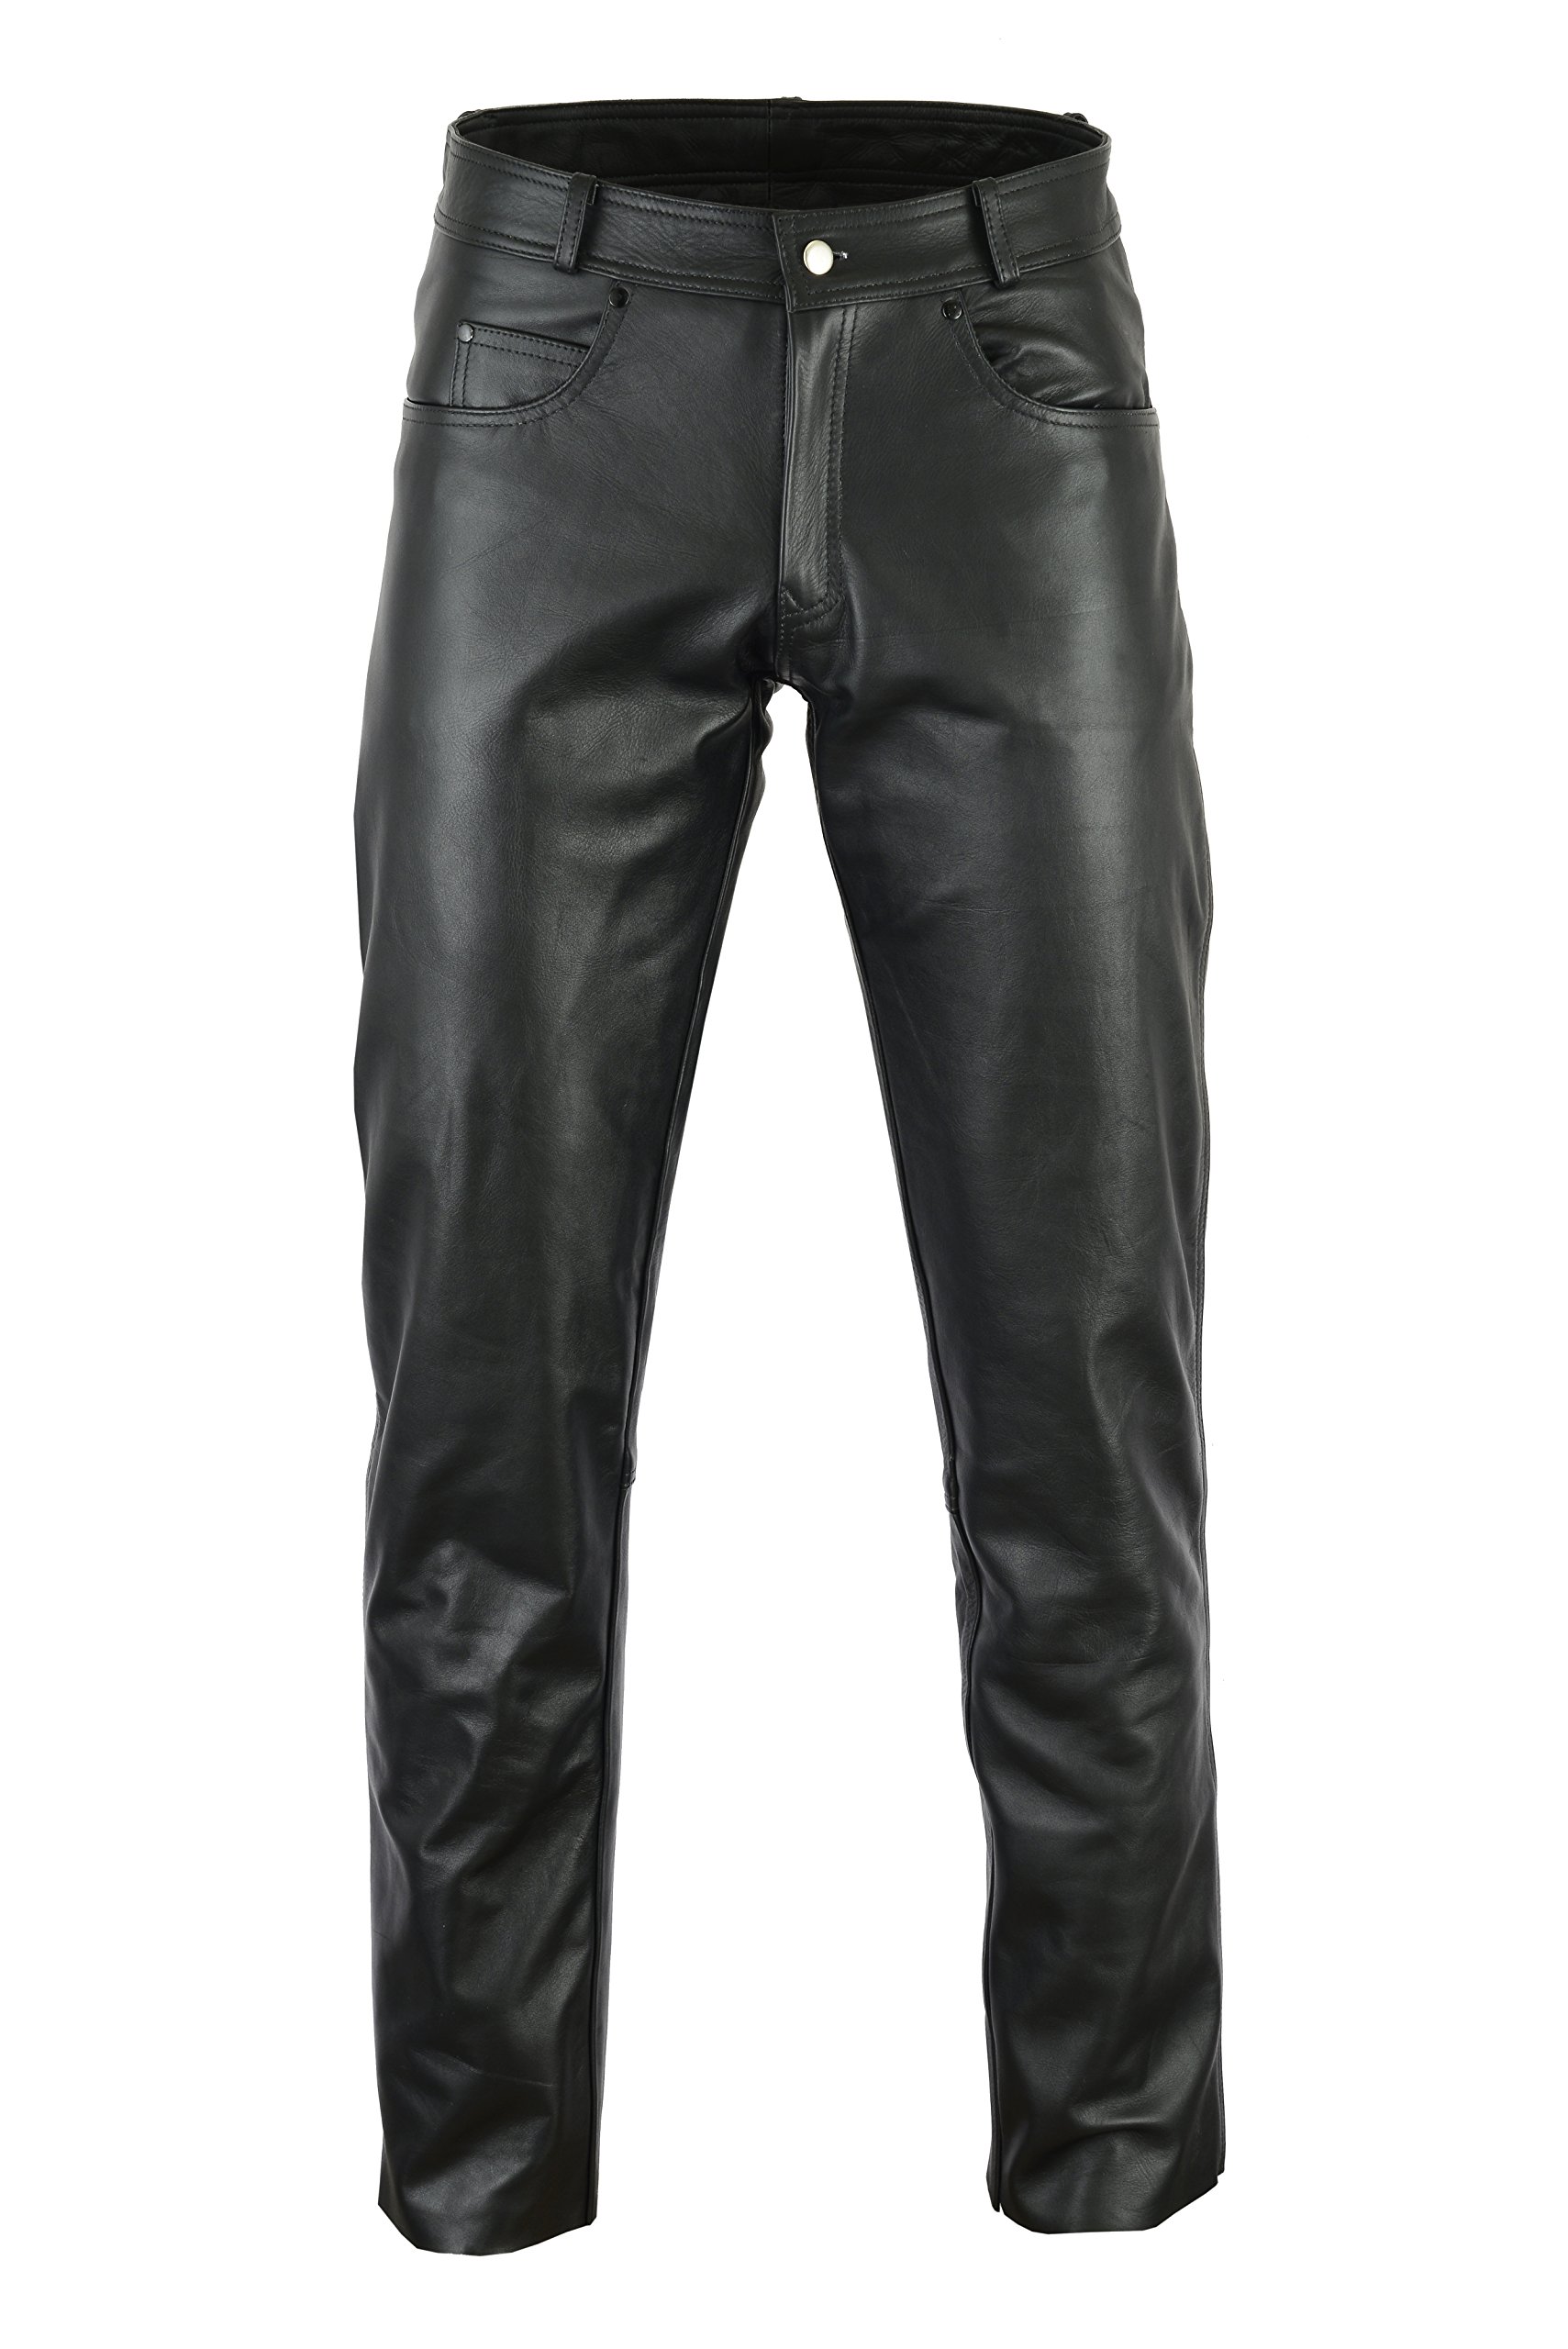 Bikers Gear Australia Herren-Jeans aus weichem Leder für bequeme Passform, schwarz,40 von Bikers Gear